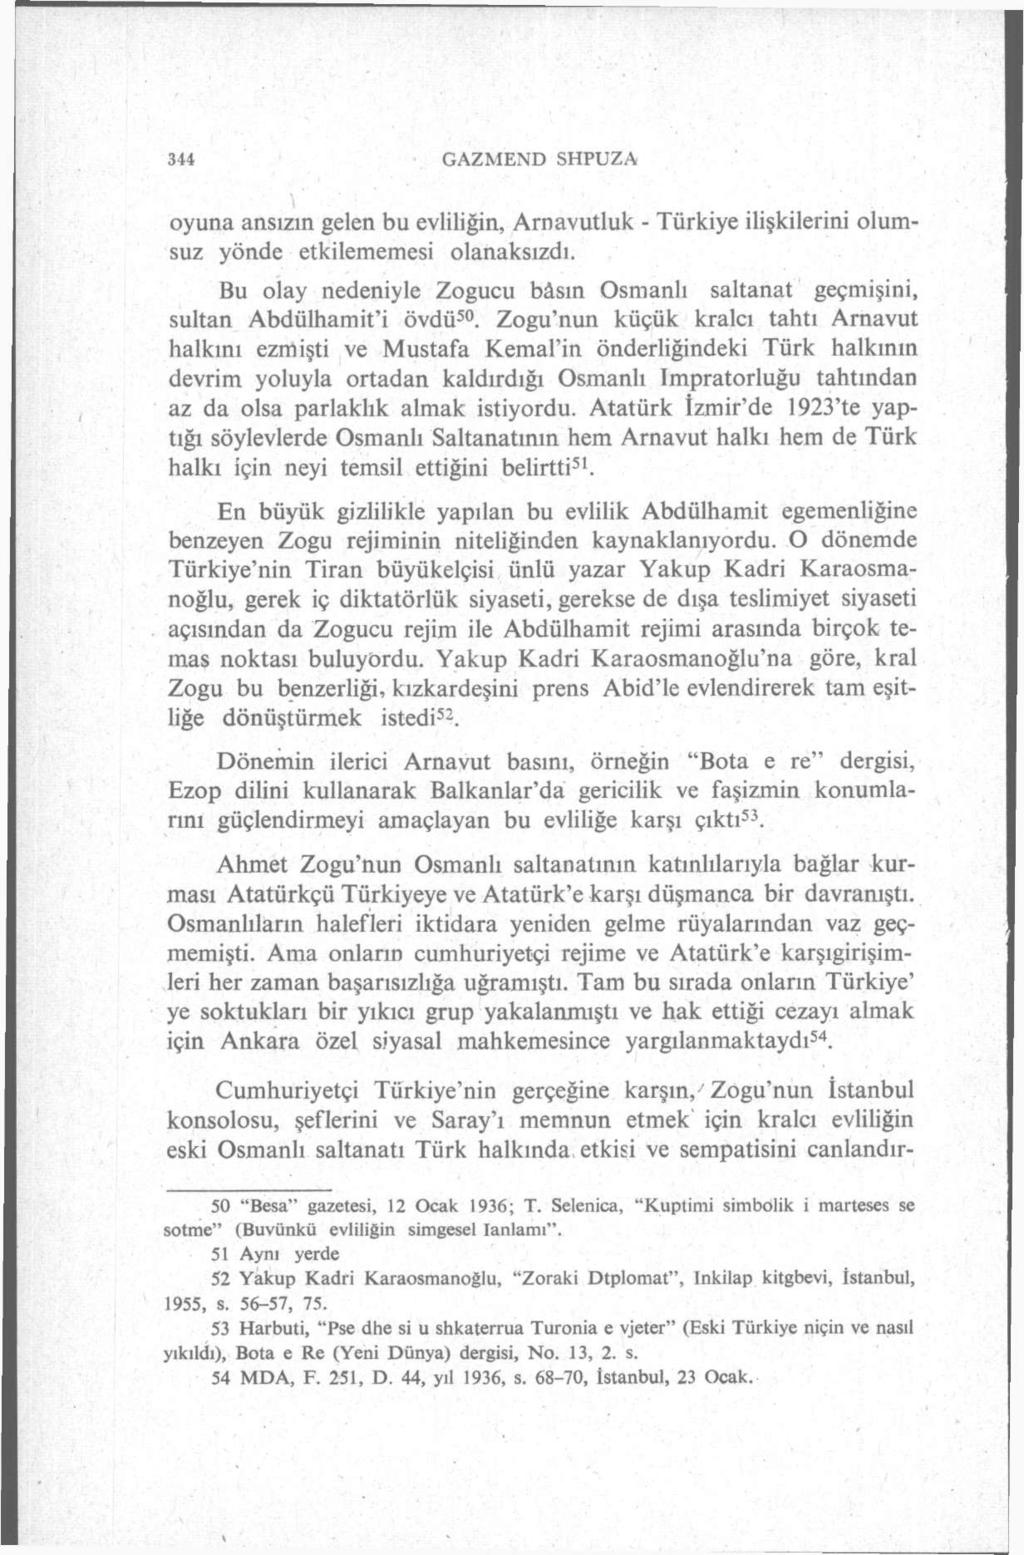 344 GAZMEND SHPUZA T oyuna ansızın gelen bu evliliğin, Arnavutluk - Türkiye ilişkilerini olumsuz yönde etkilememesi olanaksızdı.